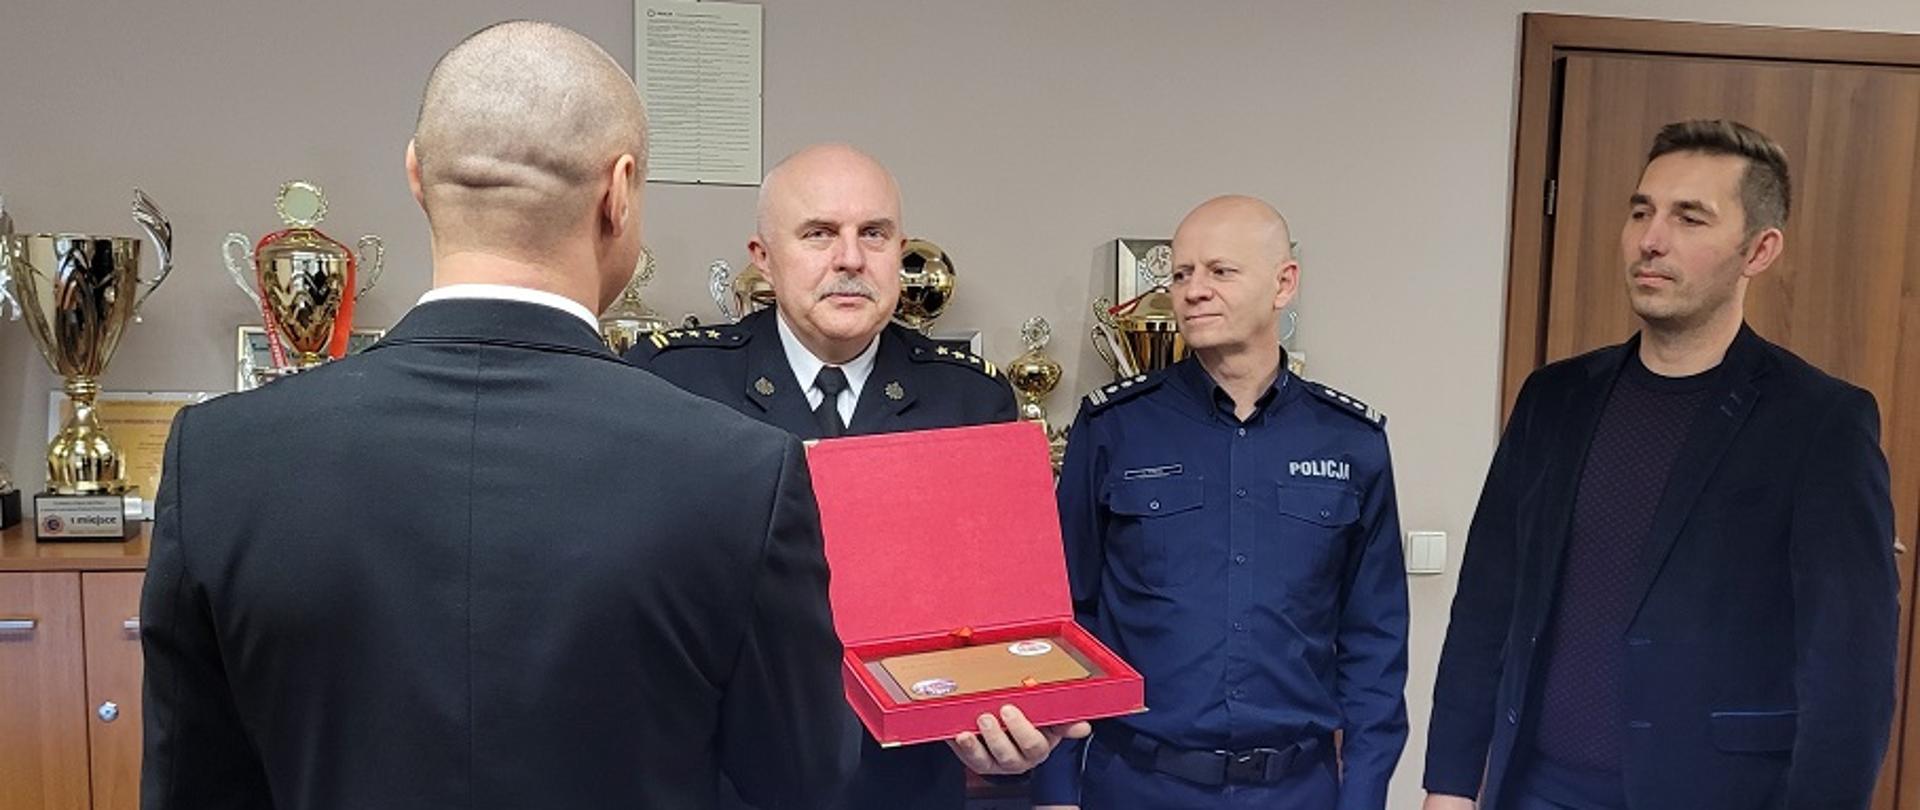 Wręczenie pamiątkowego podziękowania dla funkcjonariusza KW Policji w Katowicach